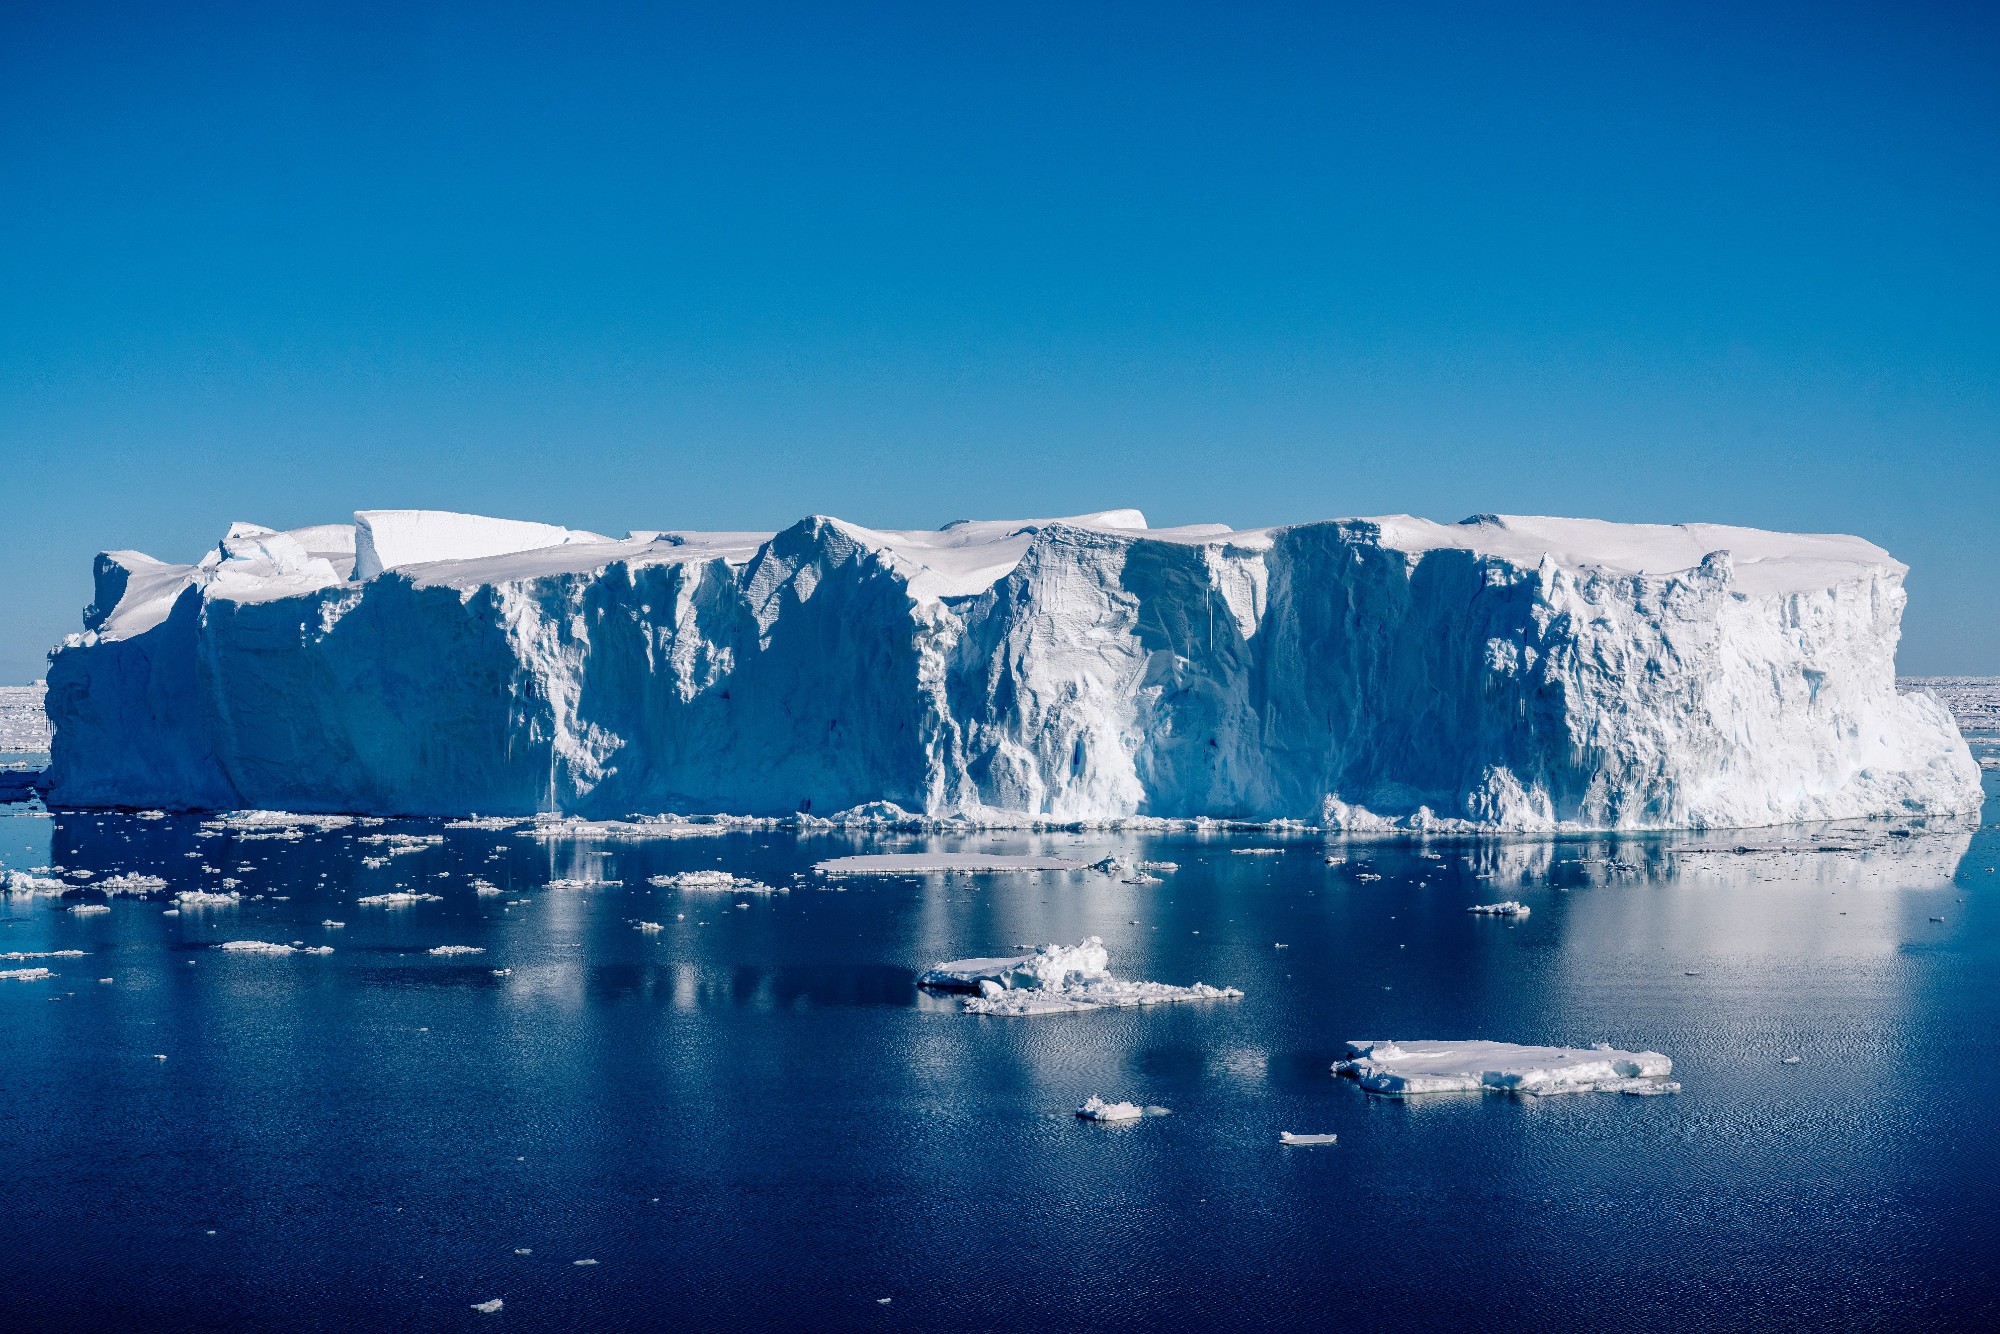 Ice berg near body of water